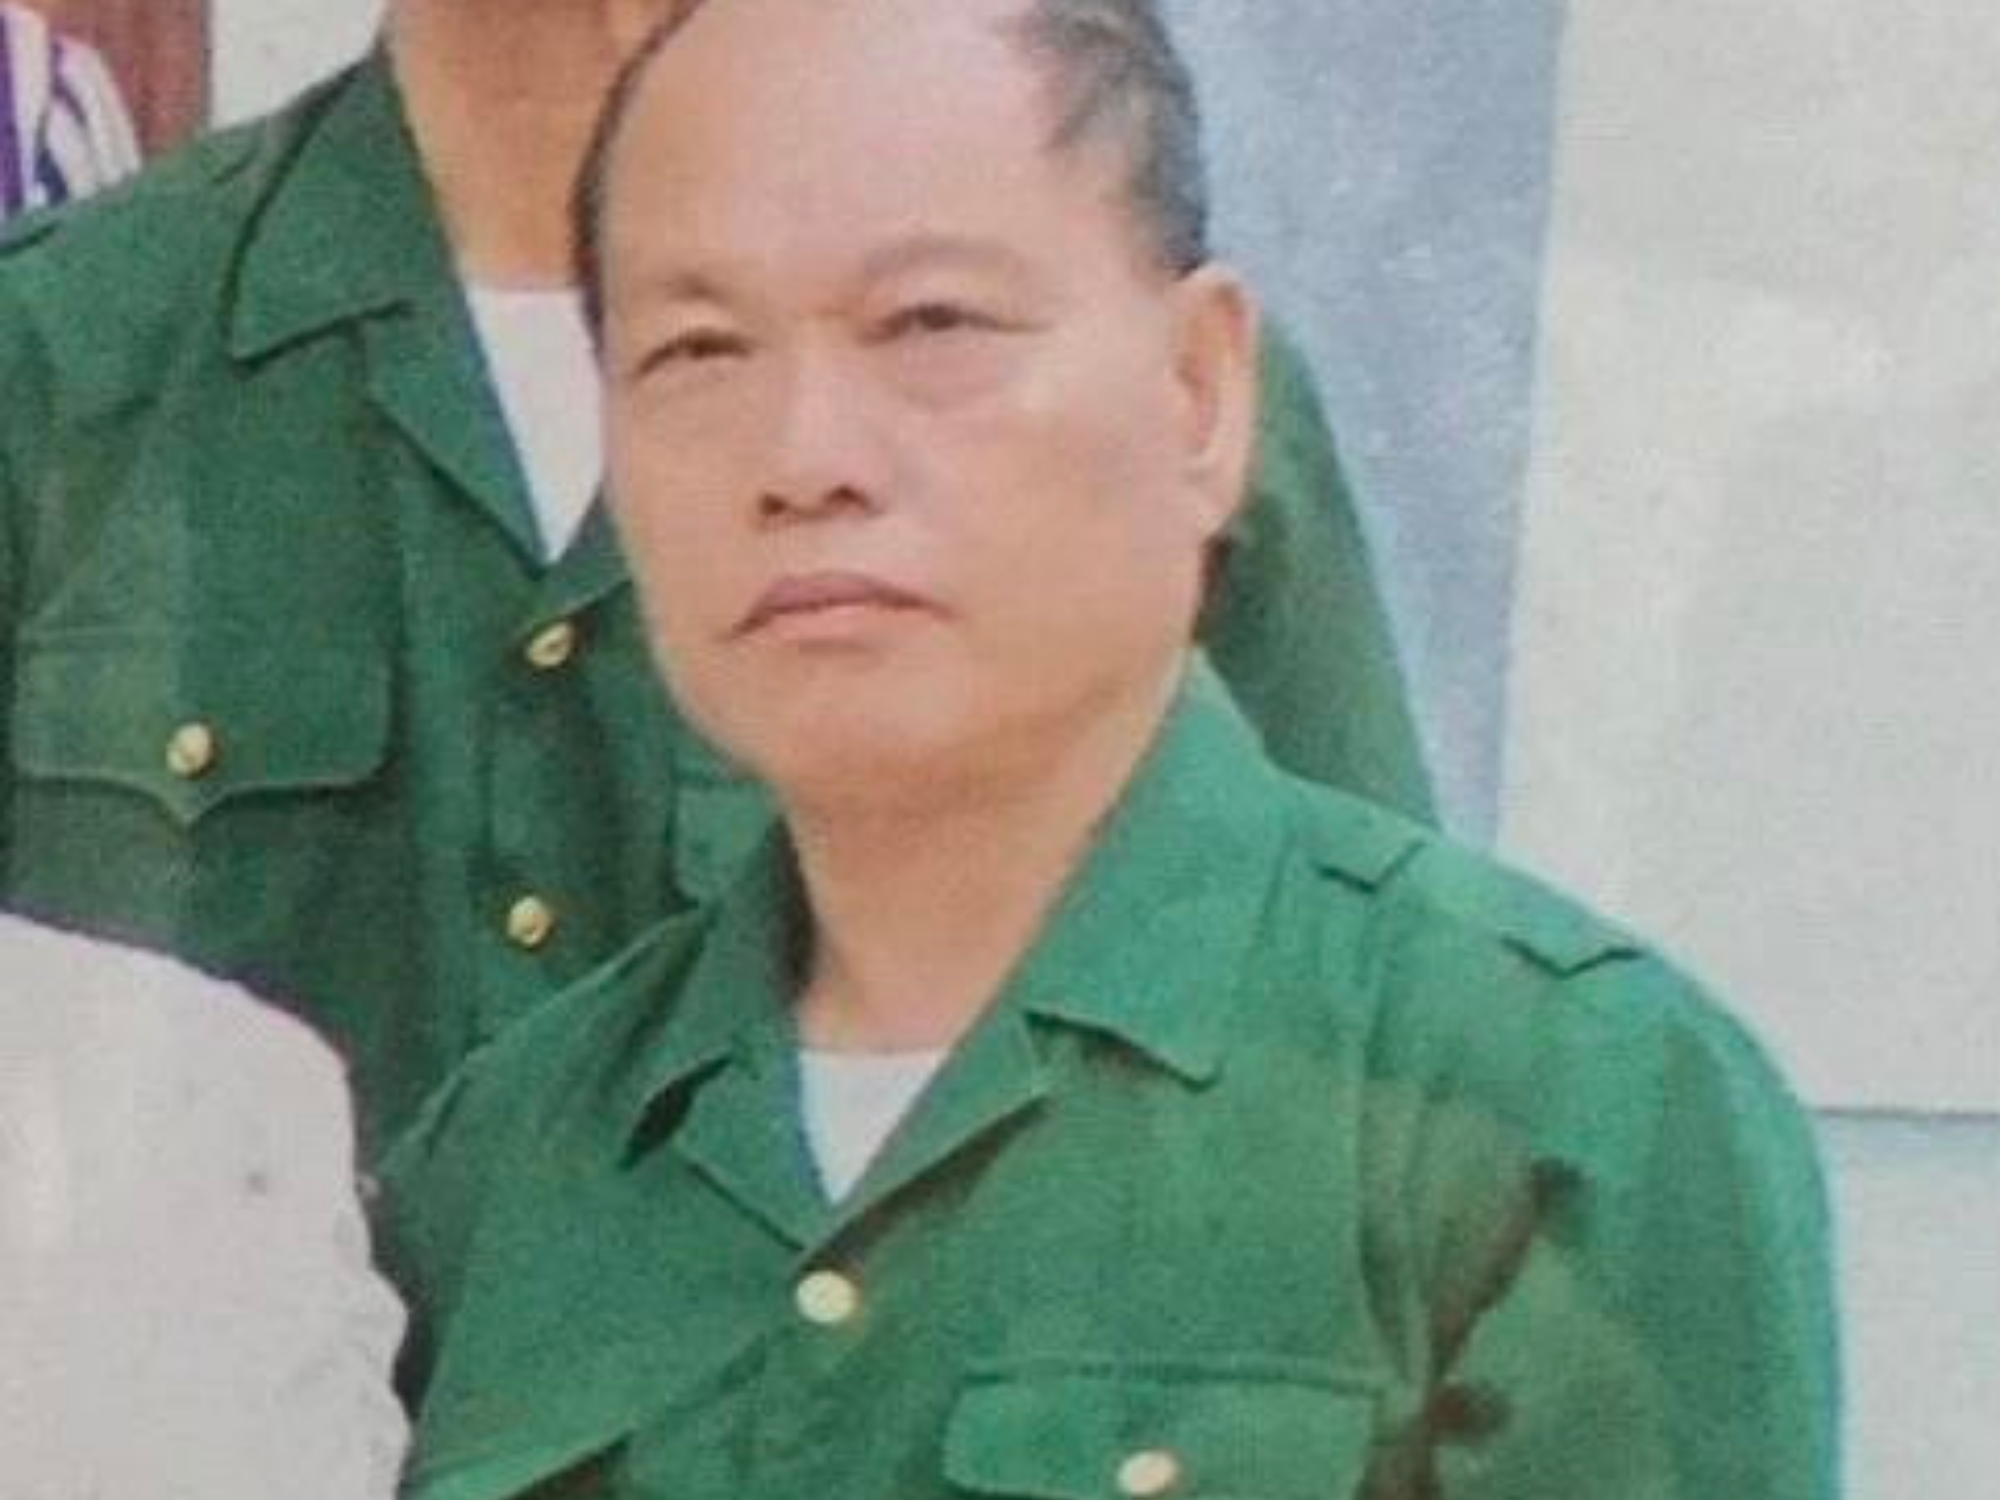 Bắc Giang: Điều tra nguyên nhân vụ án mạng khiến một người tử vong với nhiều vết thương trên cơ thể - Ảnh 1